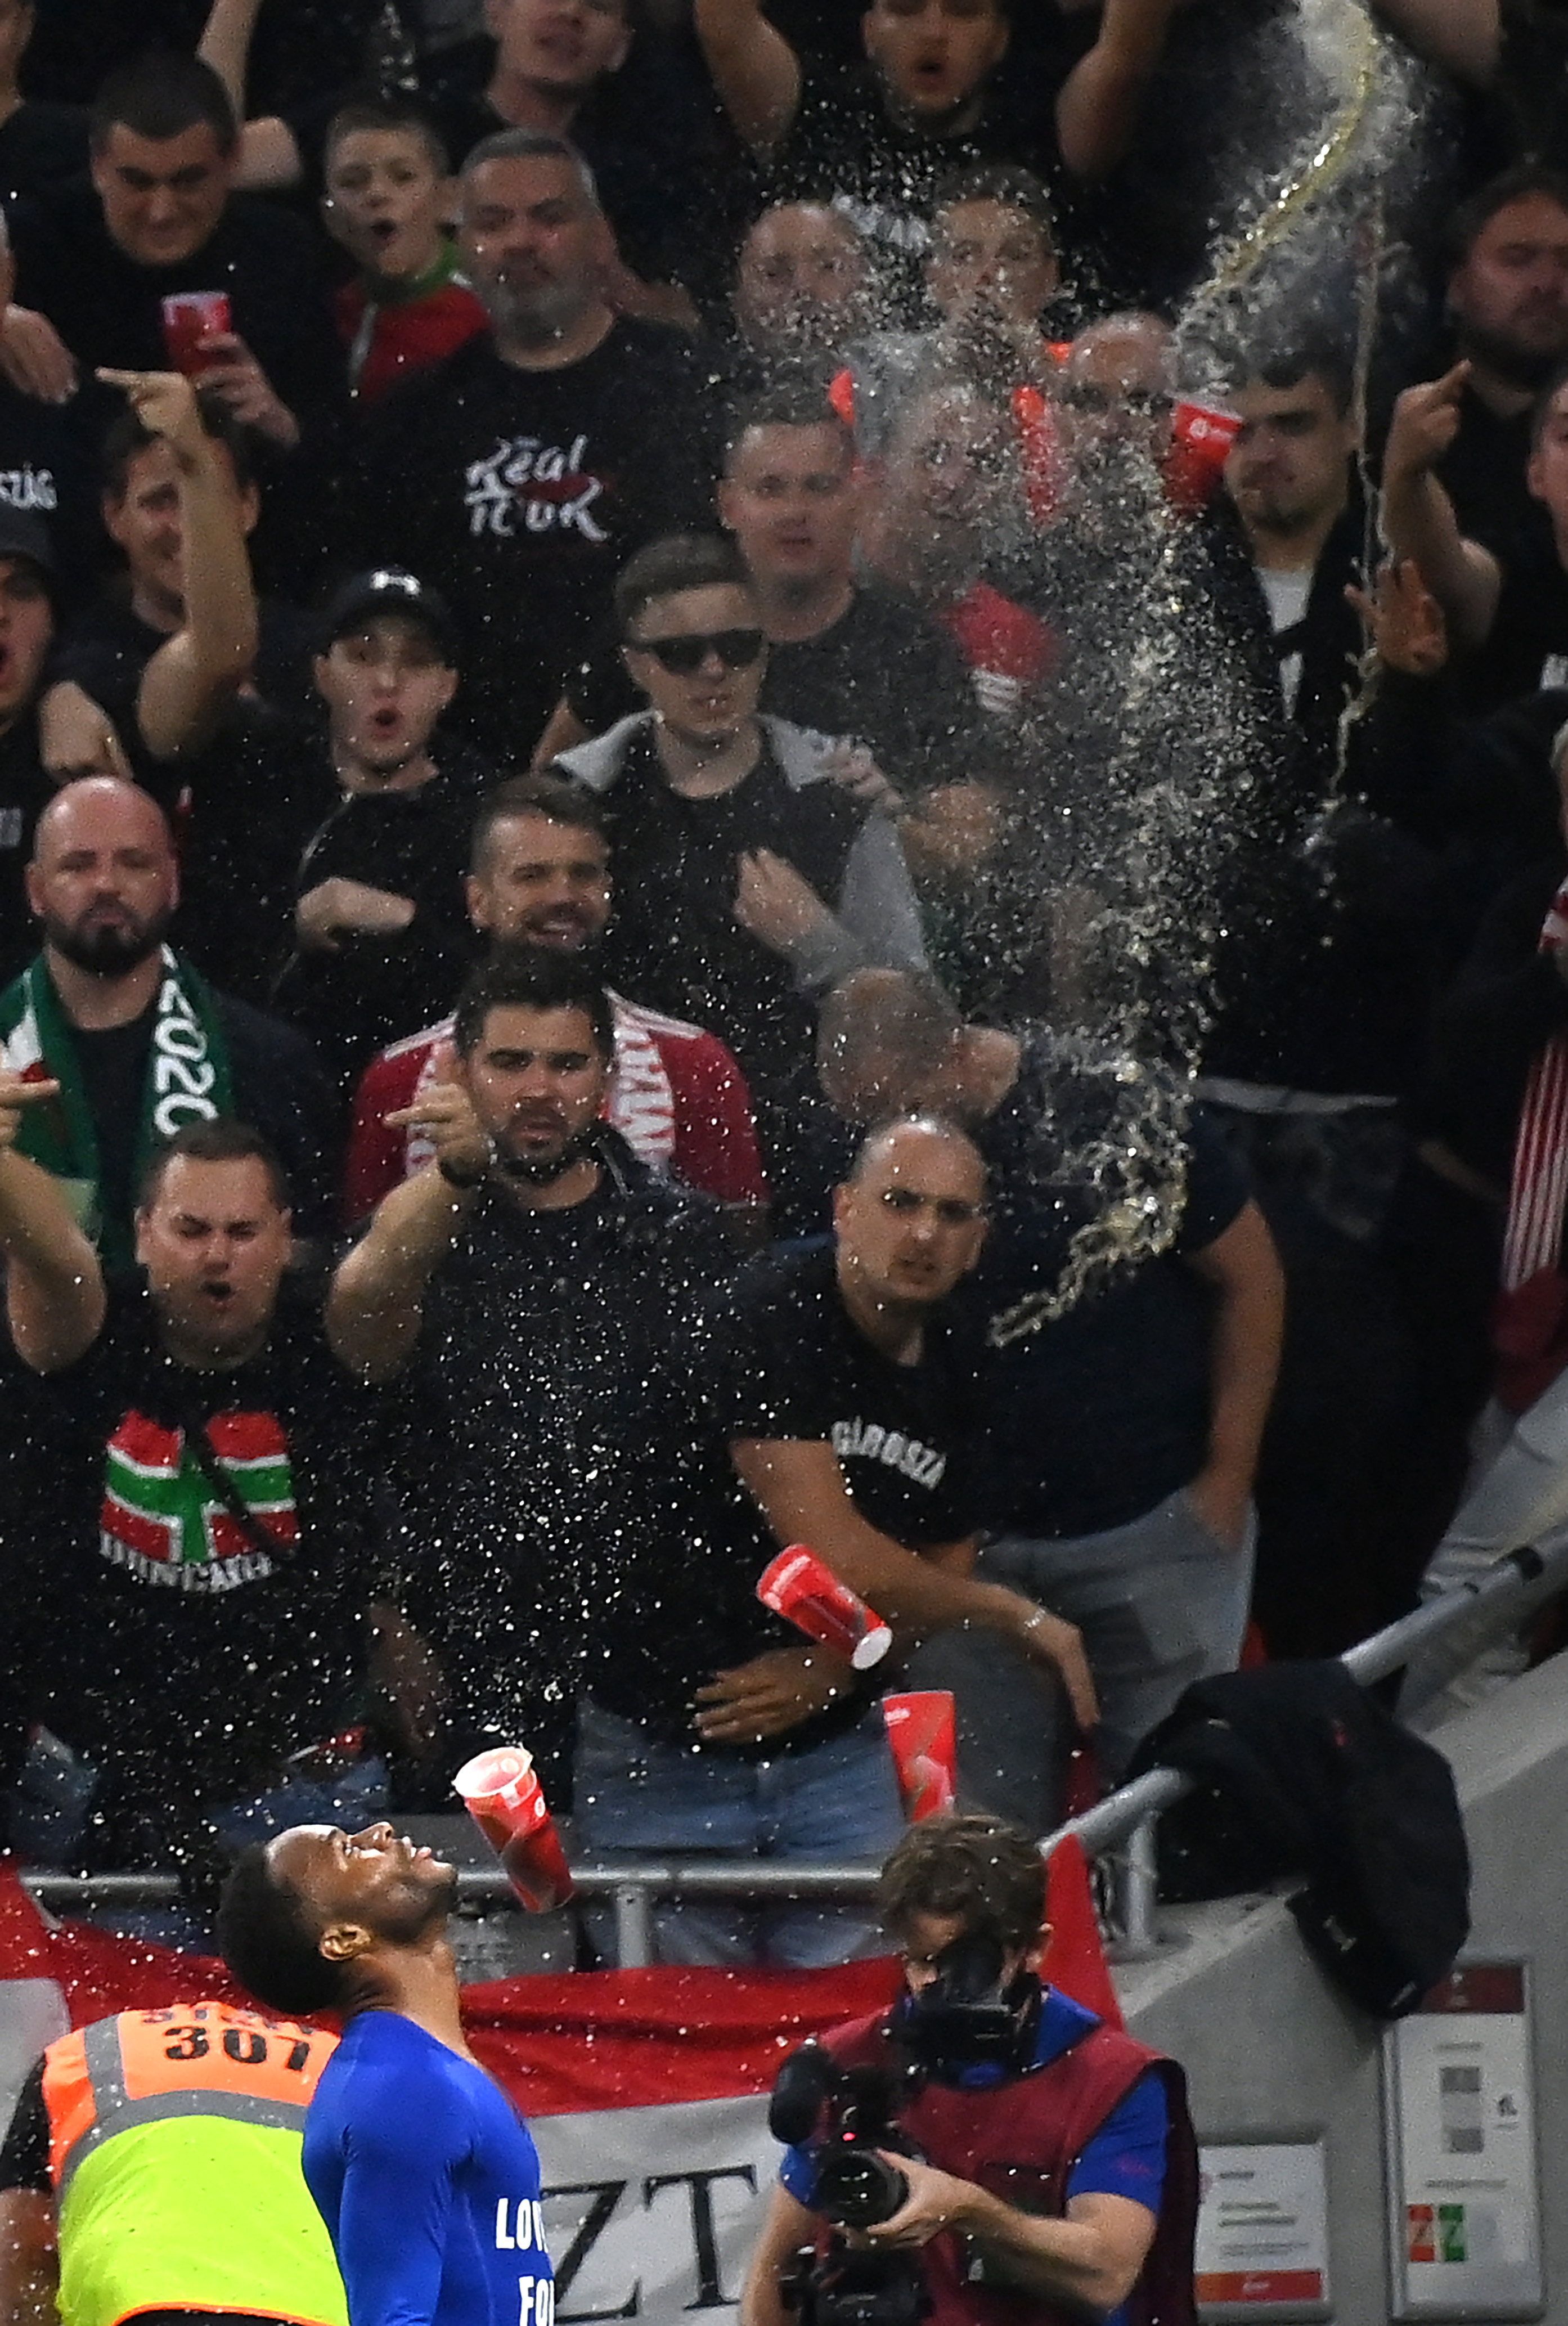 Dagad a botrány: rendőrségi feljelentés, FIFA-vizsgálat a magyar szurkolók miatt – reagált az MLSZ is – Videón, ahogy poharakkal fejbe dobták Raheem Sterlinget a gólöröme közben